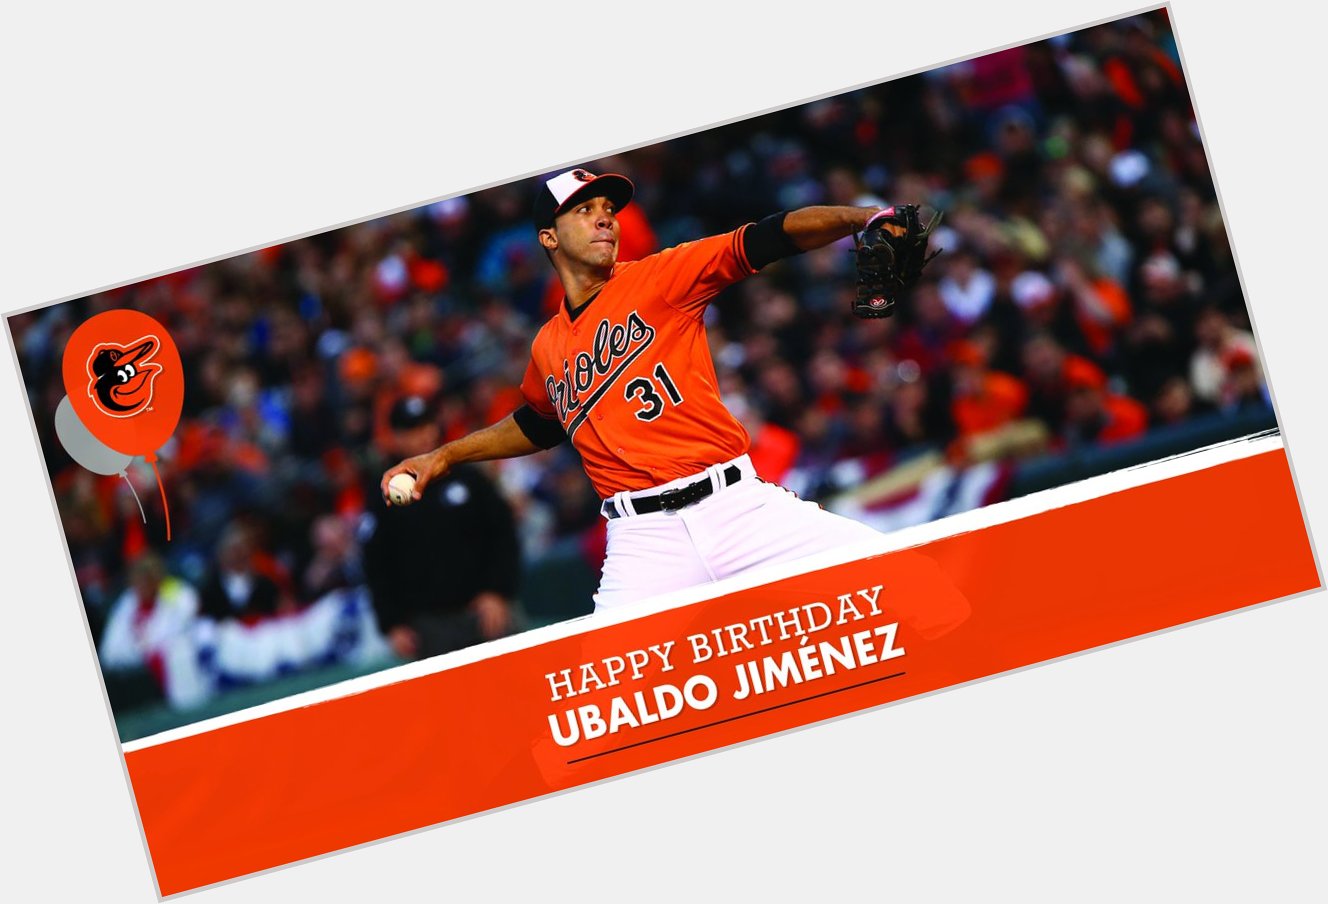 Happy 33rd Birthday to Ubaldo Jiménez! Remessage to wish him a great day. 